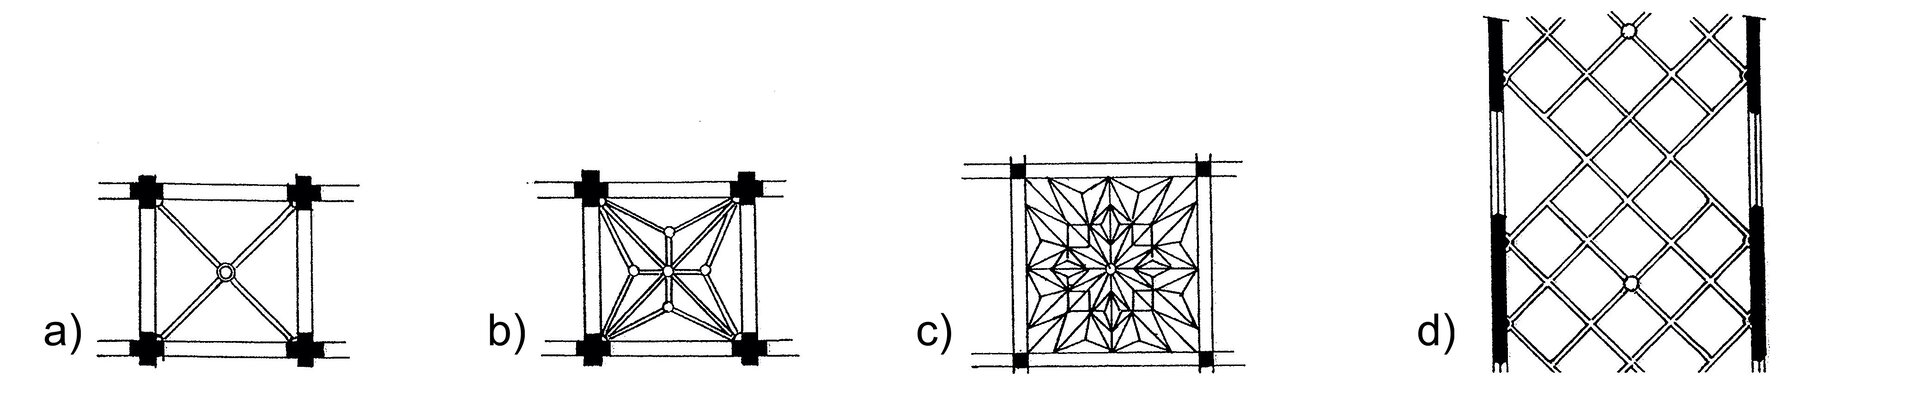 Ilustracja przedstawia czarno-białe rysunki, ukazujące rzuty poziome symetrycznych sklepień gotyckich, odpowiednio od lewej strony: a) krzyżowo-żebrowe, które w przekroju posiada w kwadrat wrysowane dwie przecinające się po przekątnej linie, b) gwiaździste, przypominające, wykreśloną na podstawie przekątnych, czteroramienną gwiazdę, c) kryształowe, tworzące w rzucie układ rozbudowanych linii tworzących figury geometryczne przypominających nacięcia kryształu, d) sieciowe, tworzącej w rzucie krzyżujące się przekątne przypominające sieć.